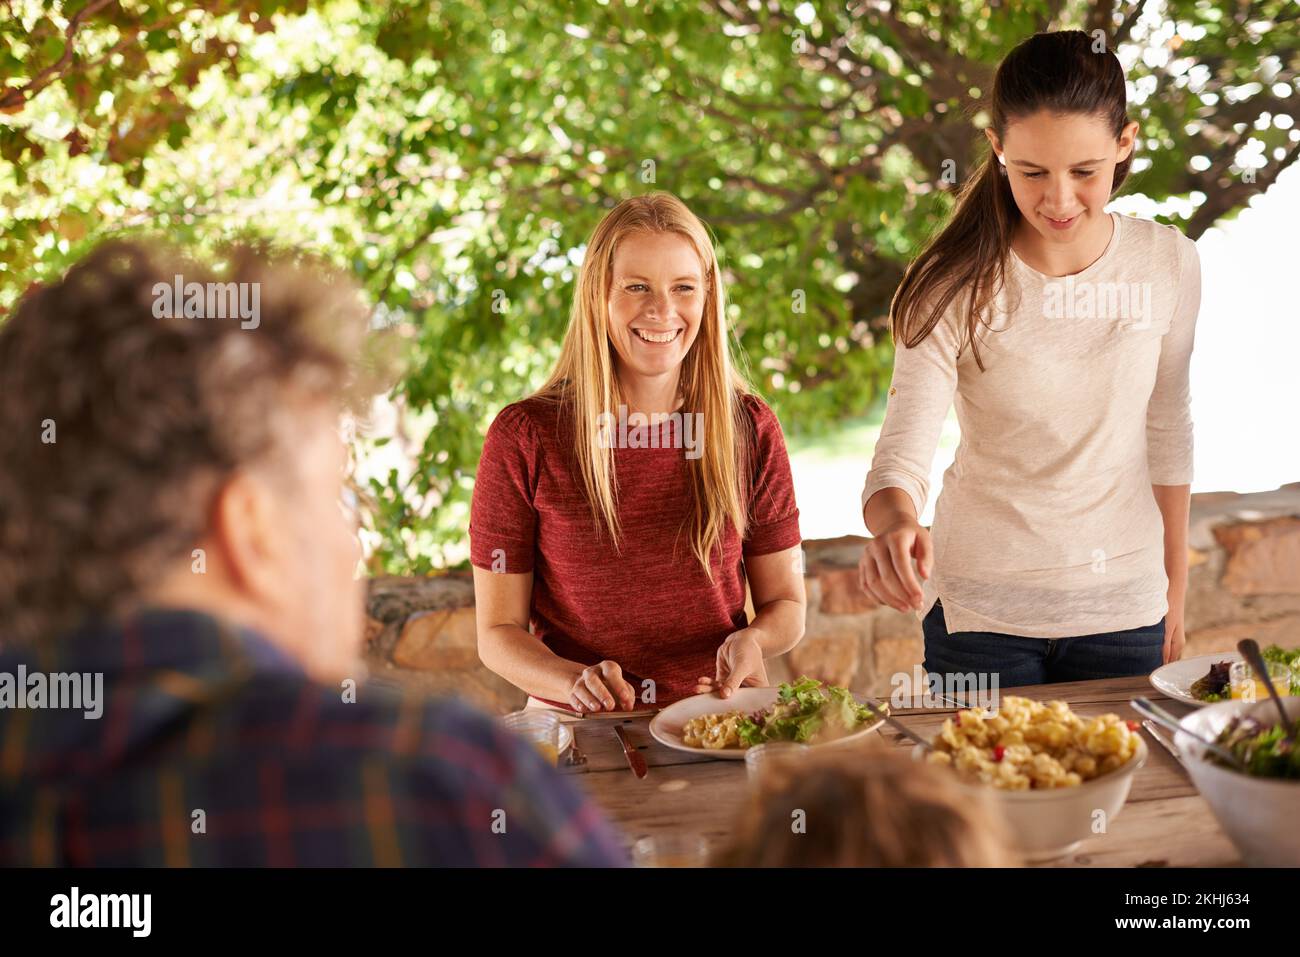 Familienessen sind die besten. Ein Blick auf eine Familie, die sich auf ein gemeinsames Mittagessen im Freien vorbereitet. Stockfoto